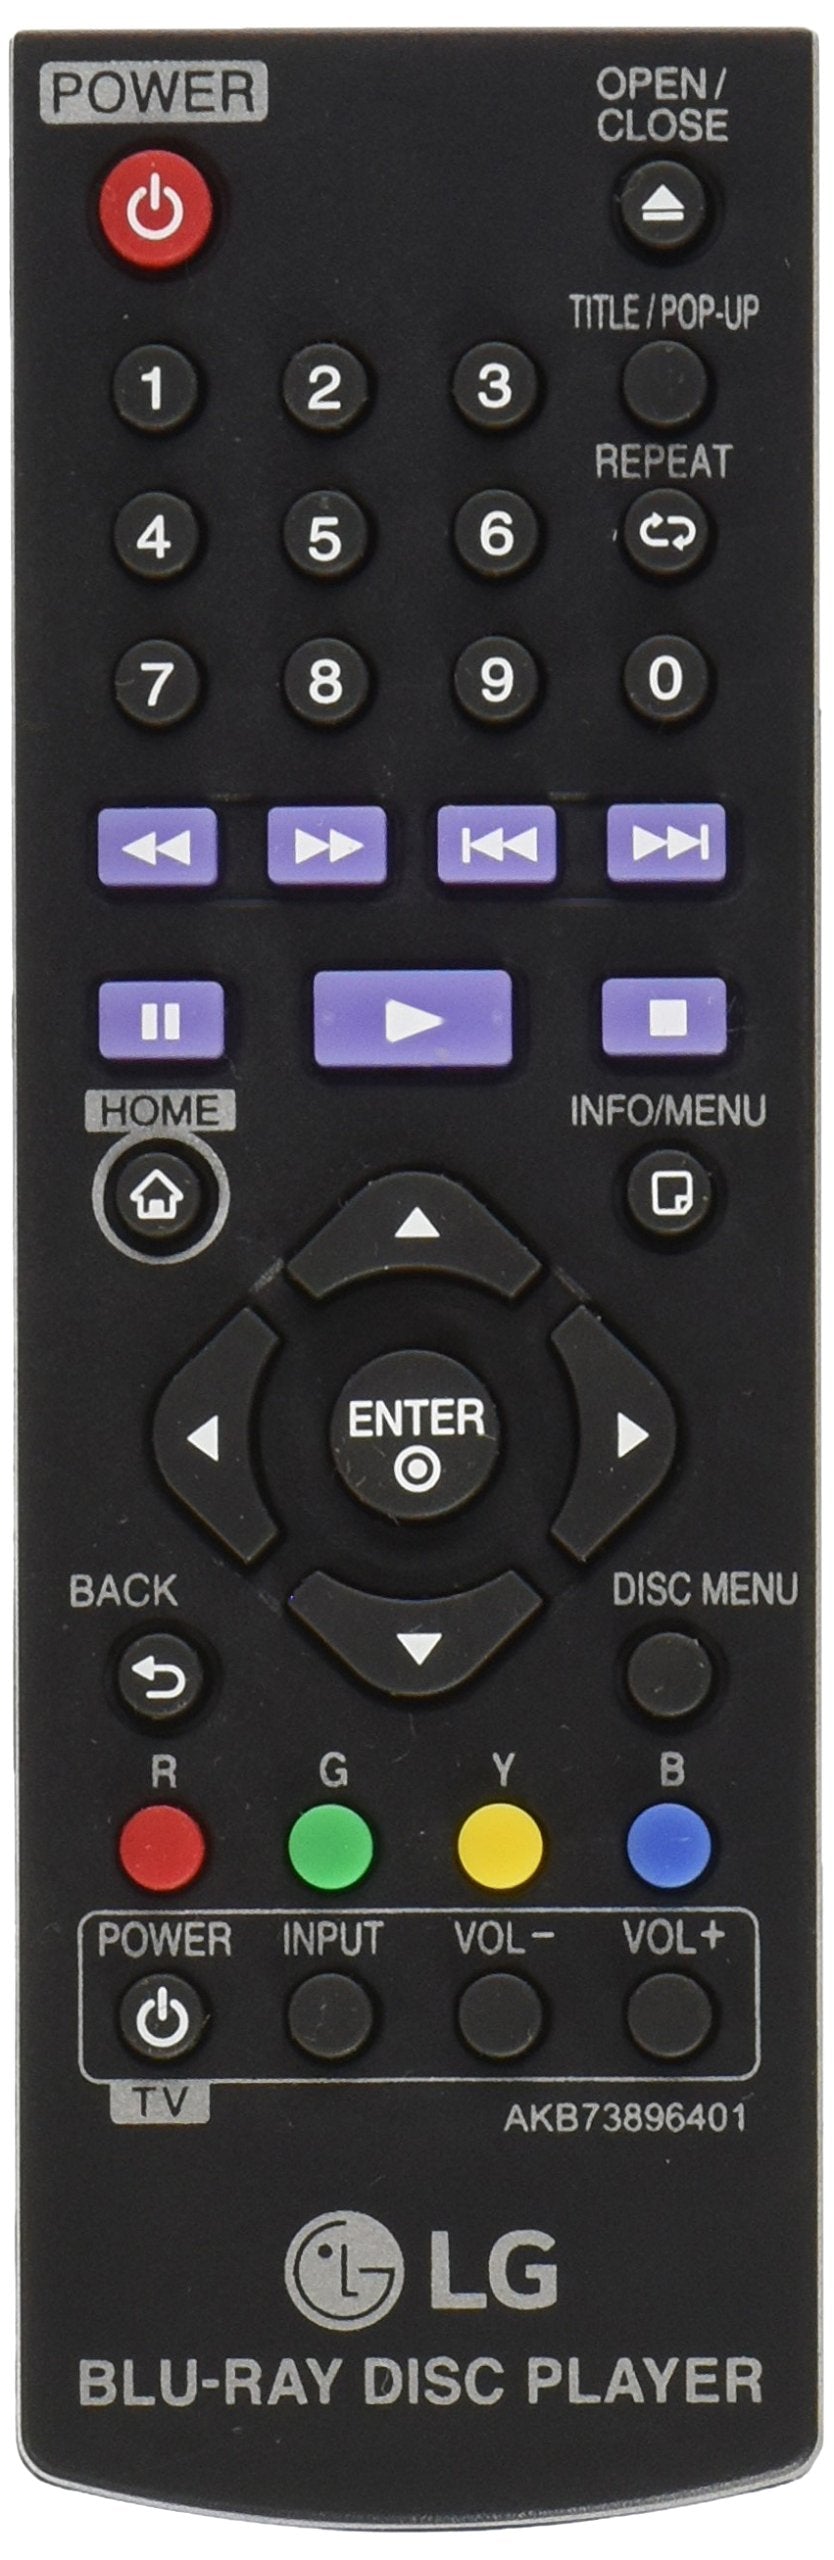  [AUSTRALIA] - LG AKB73896401 Remote Control For BP200 AKB73896401 BD640 BP325W BP135W BP350 DVD Blu-Ray Disc Player